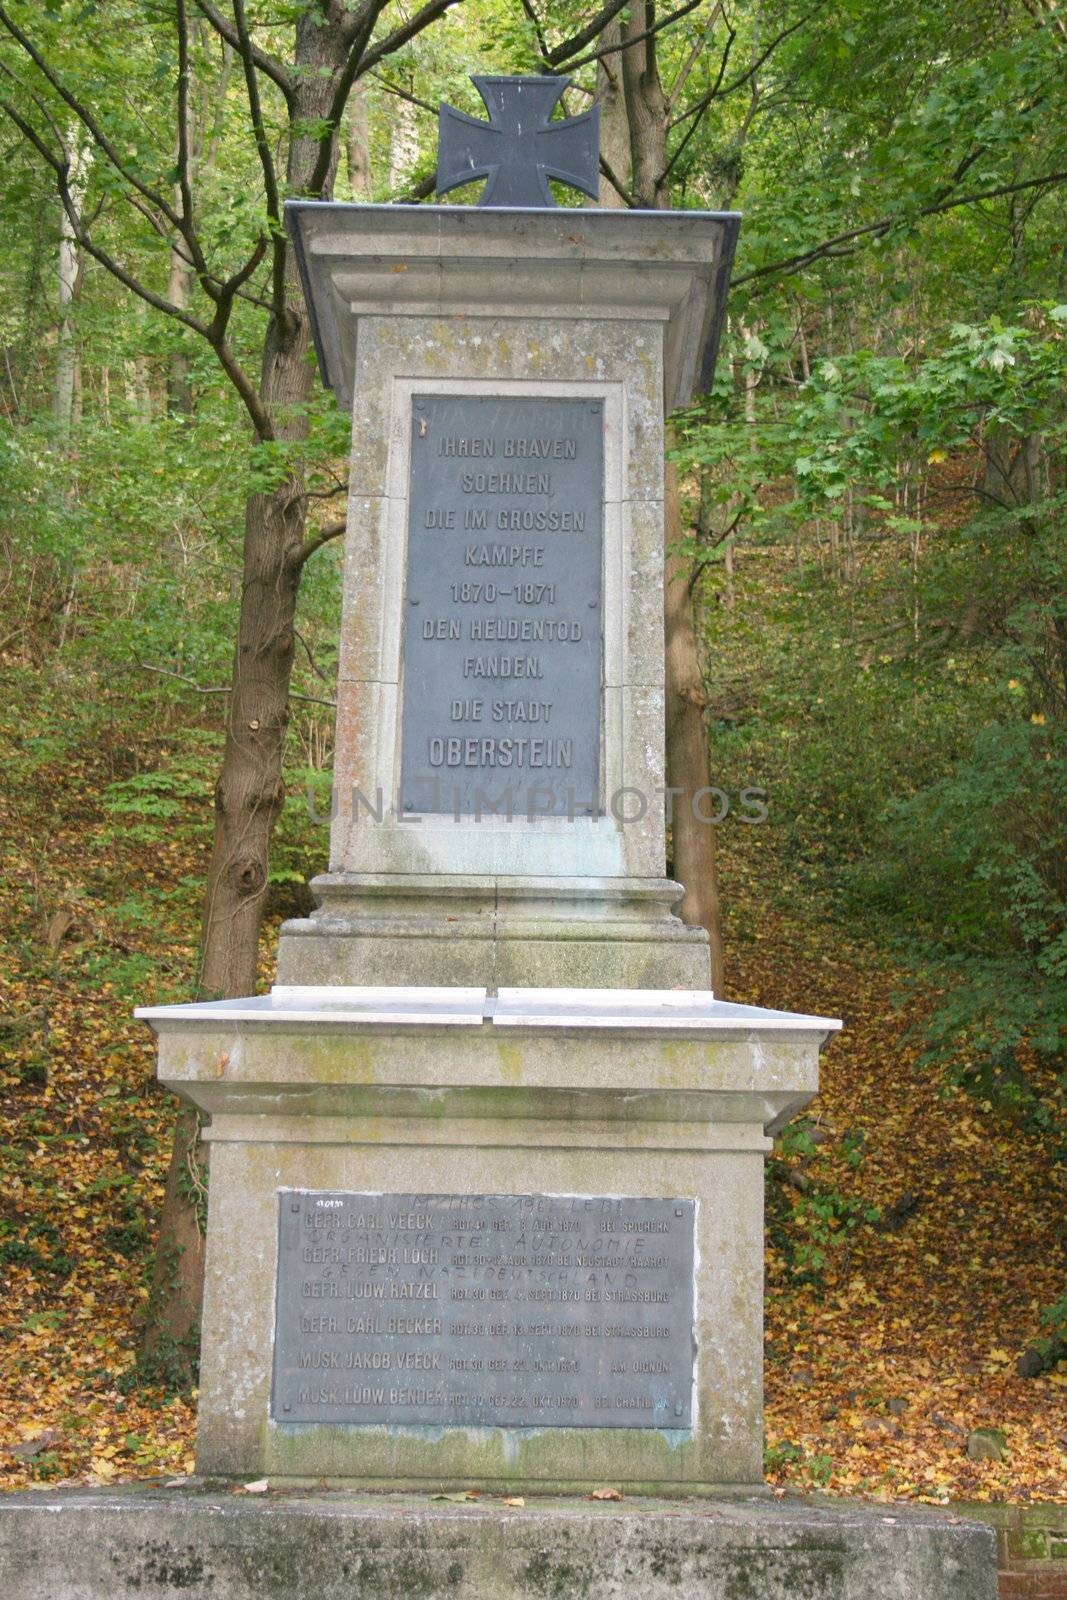 Gedenkstein an vergangene Kriege,im Wald aufgestellt	
Monument to past wars, situated in the forest